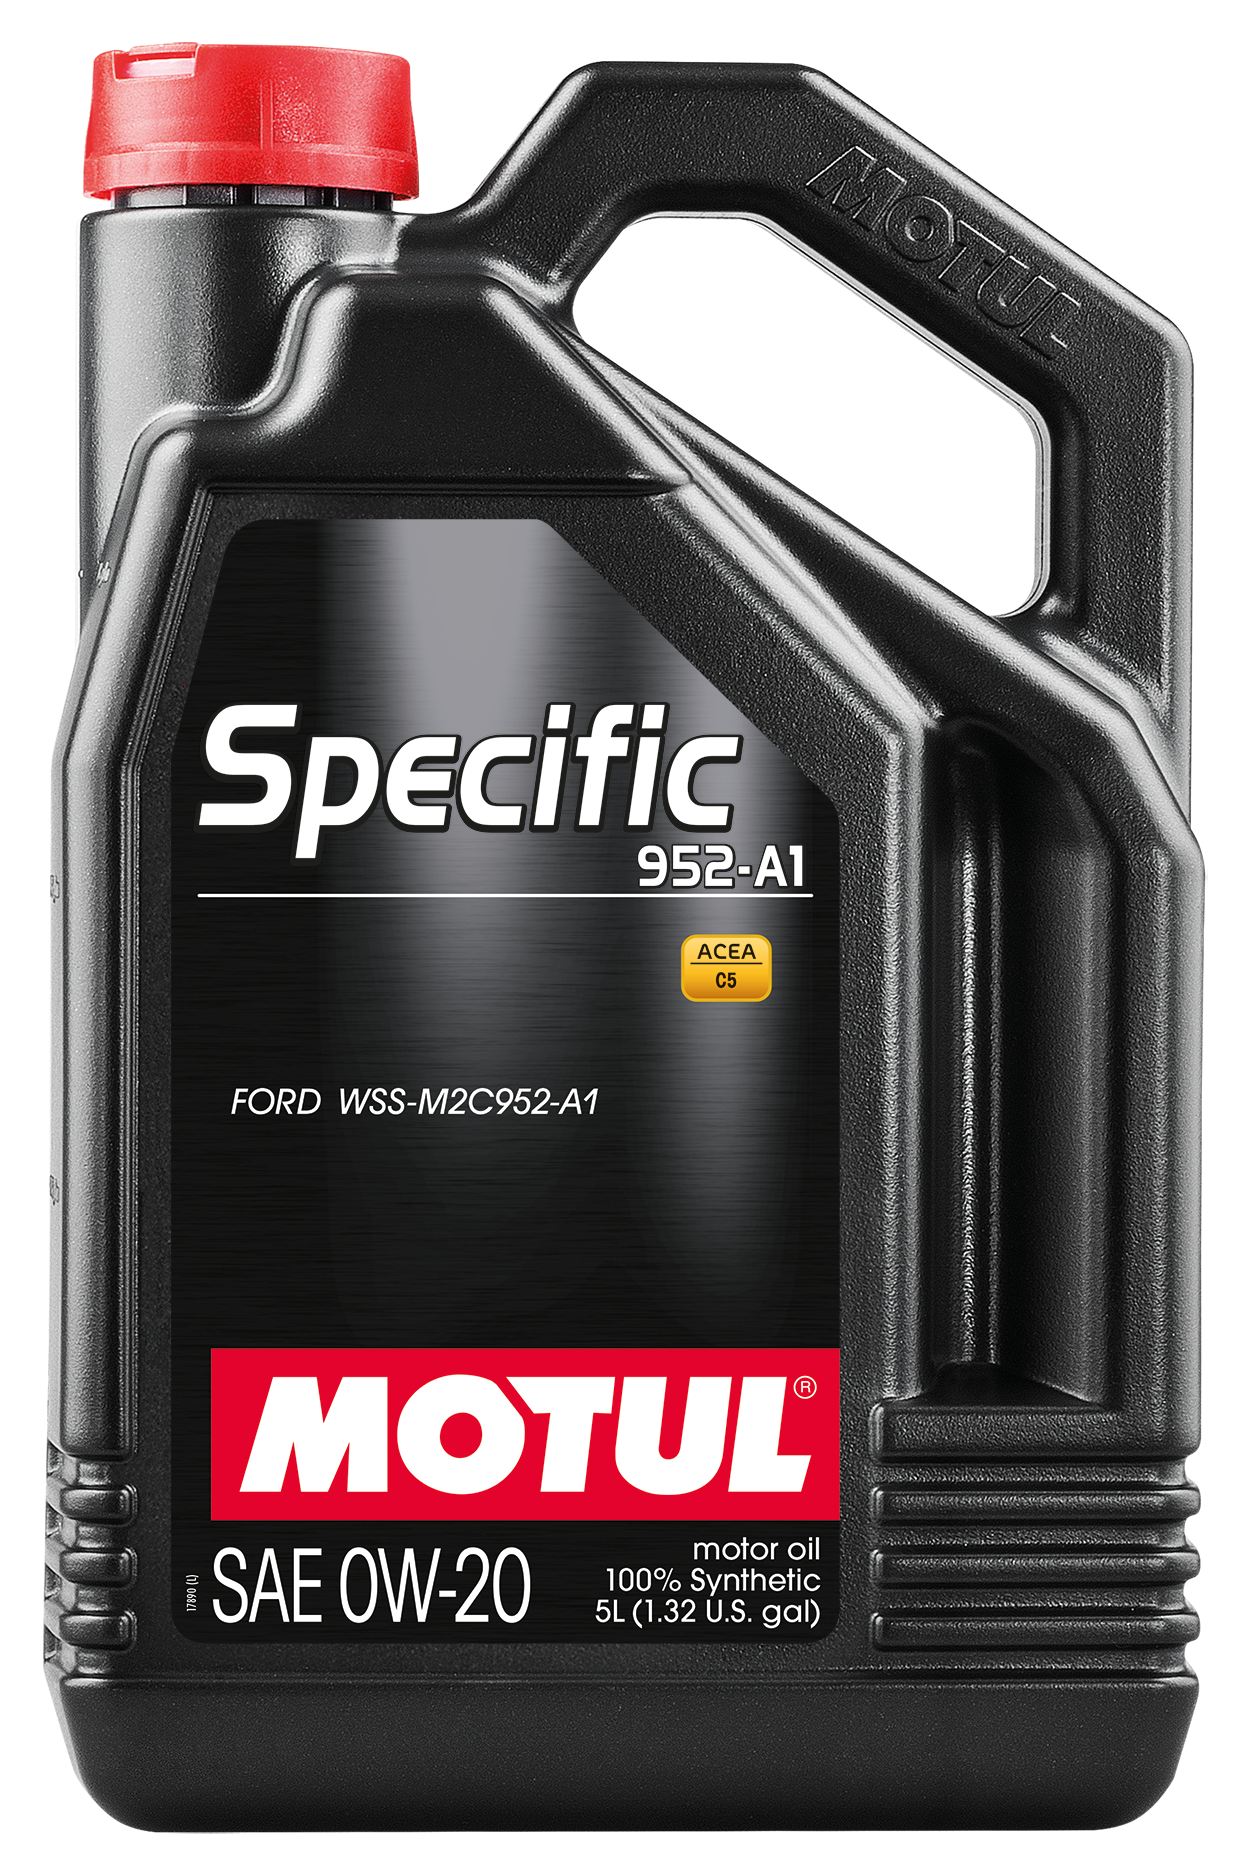 Motul SPECIFIC 952-A1 0W-20, 5 liter